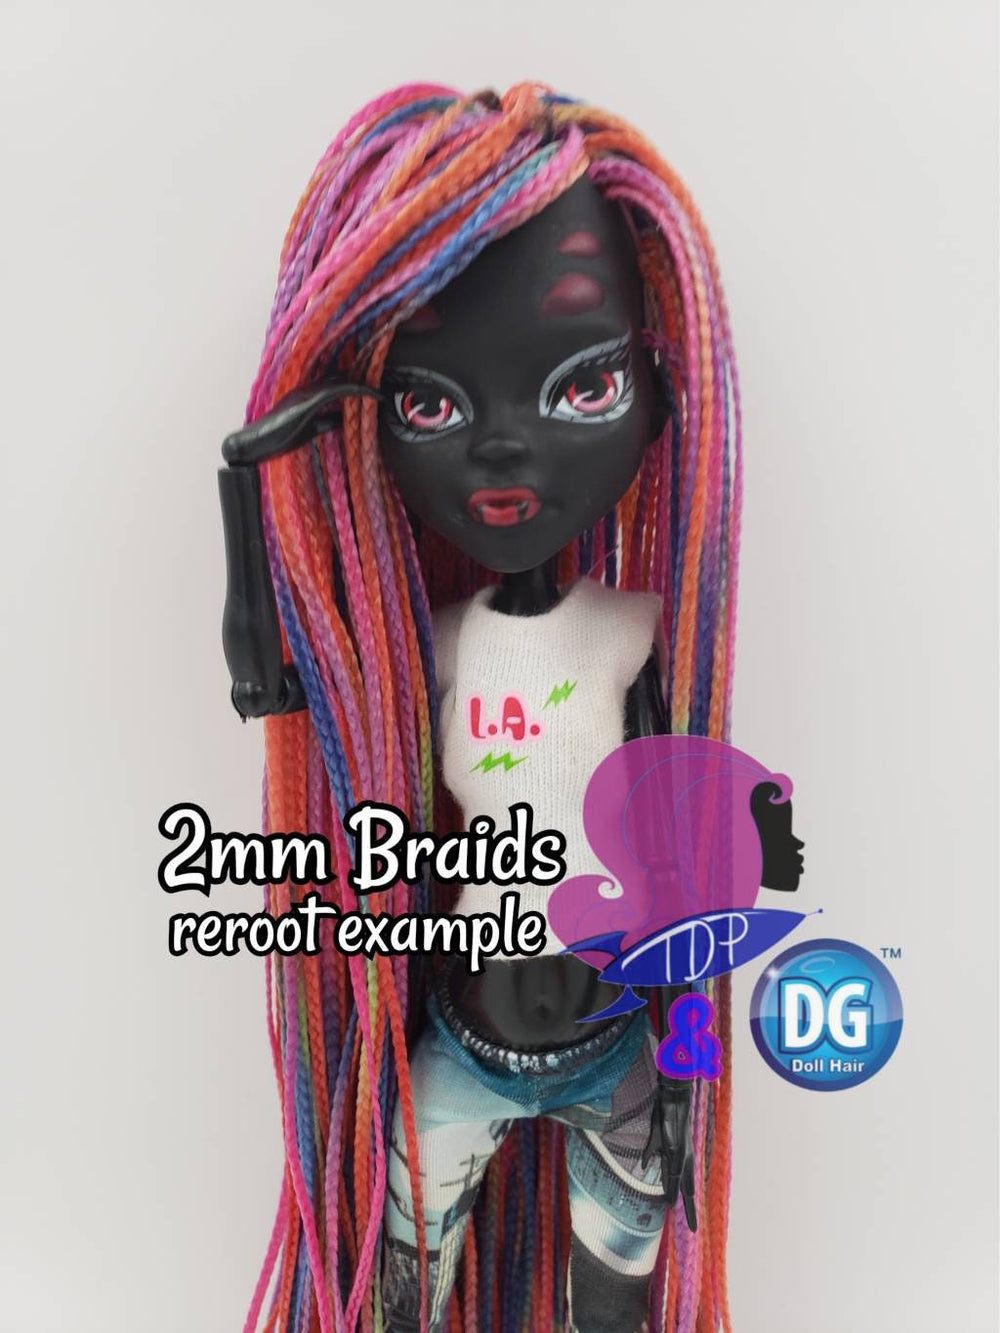 DG-Hq™ Prairie Rose Micro Mini Braids #Bh276 Pale Pink & Gold 2mm Doll Hair Reroot Barbie™ Monster High™ Rainbow High